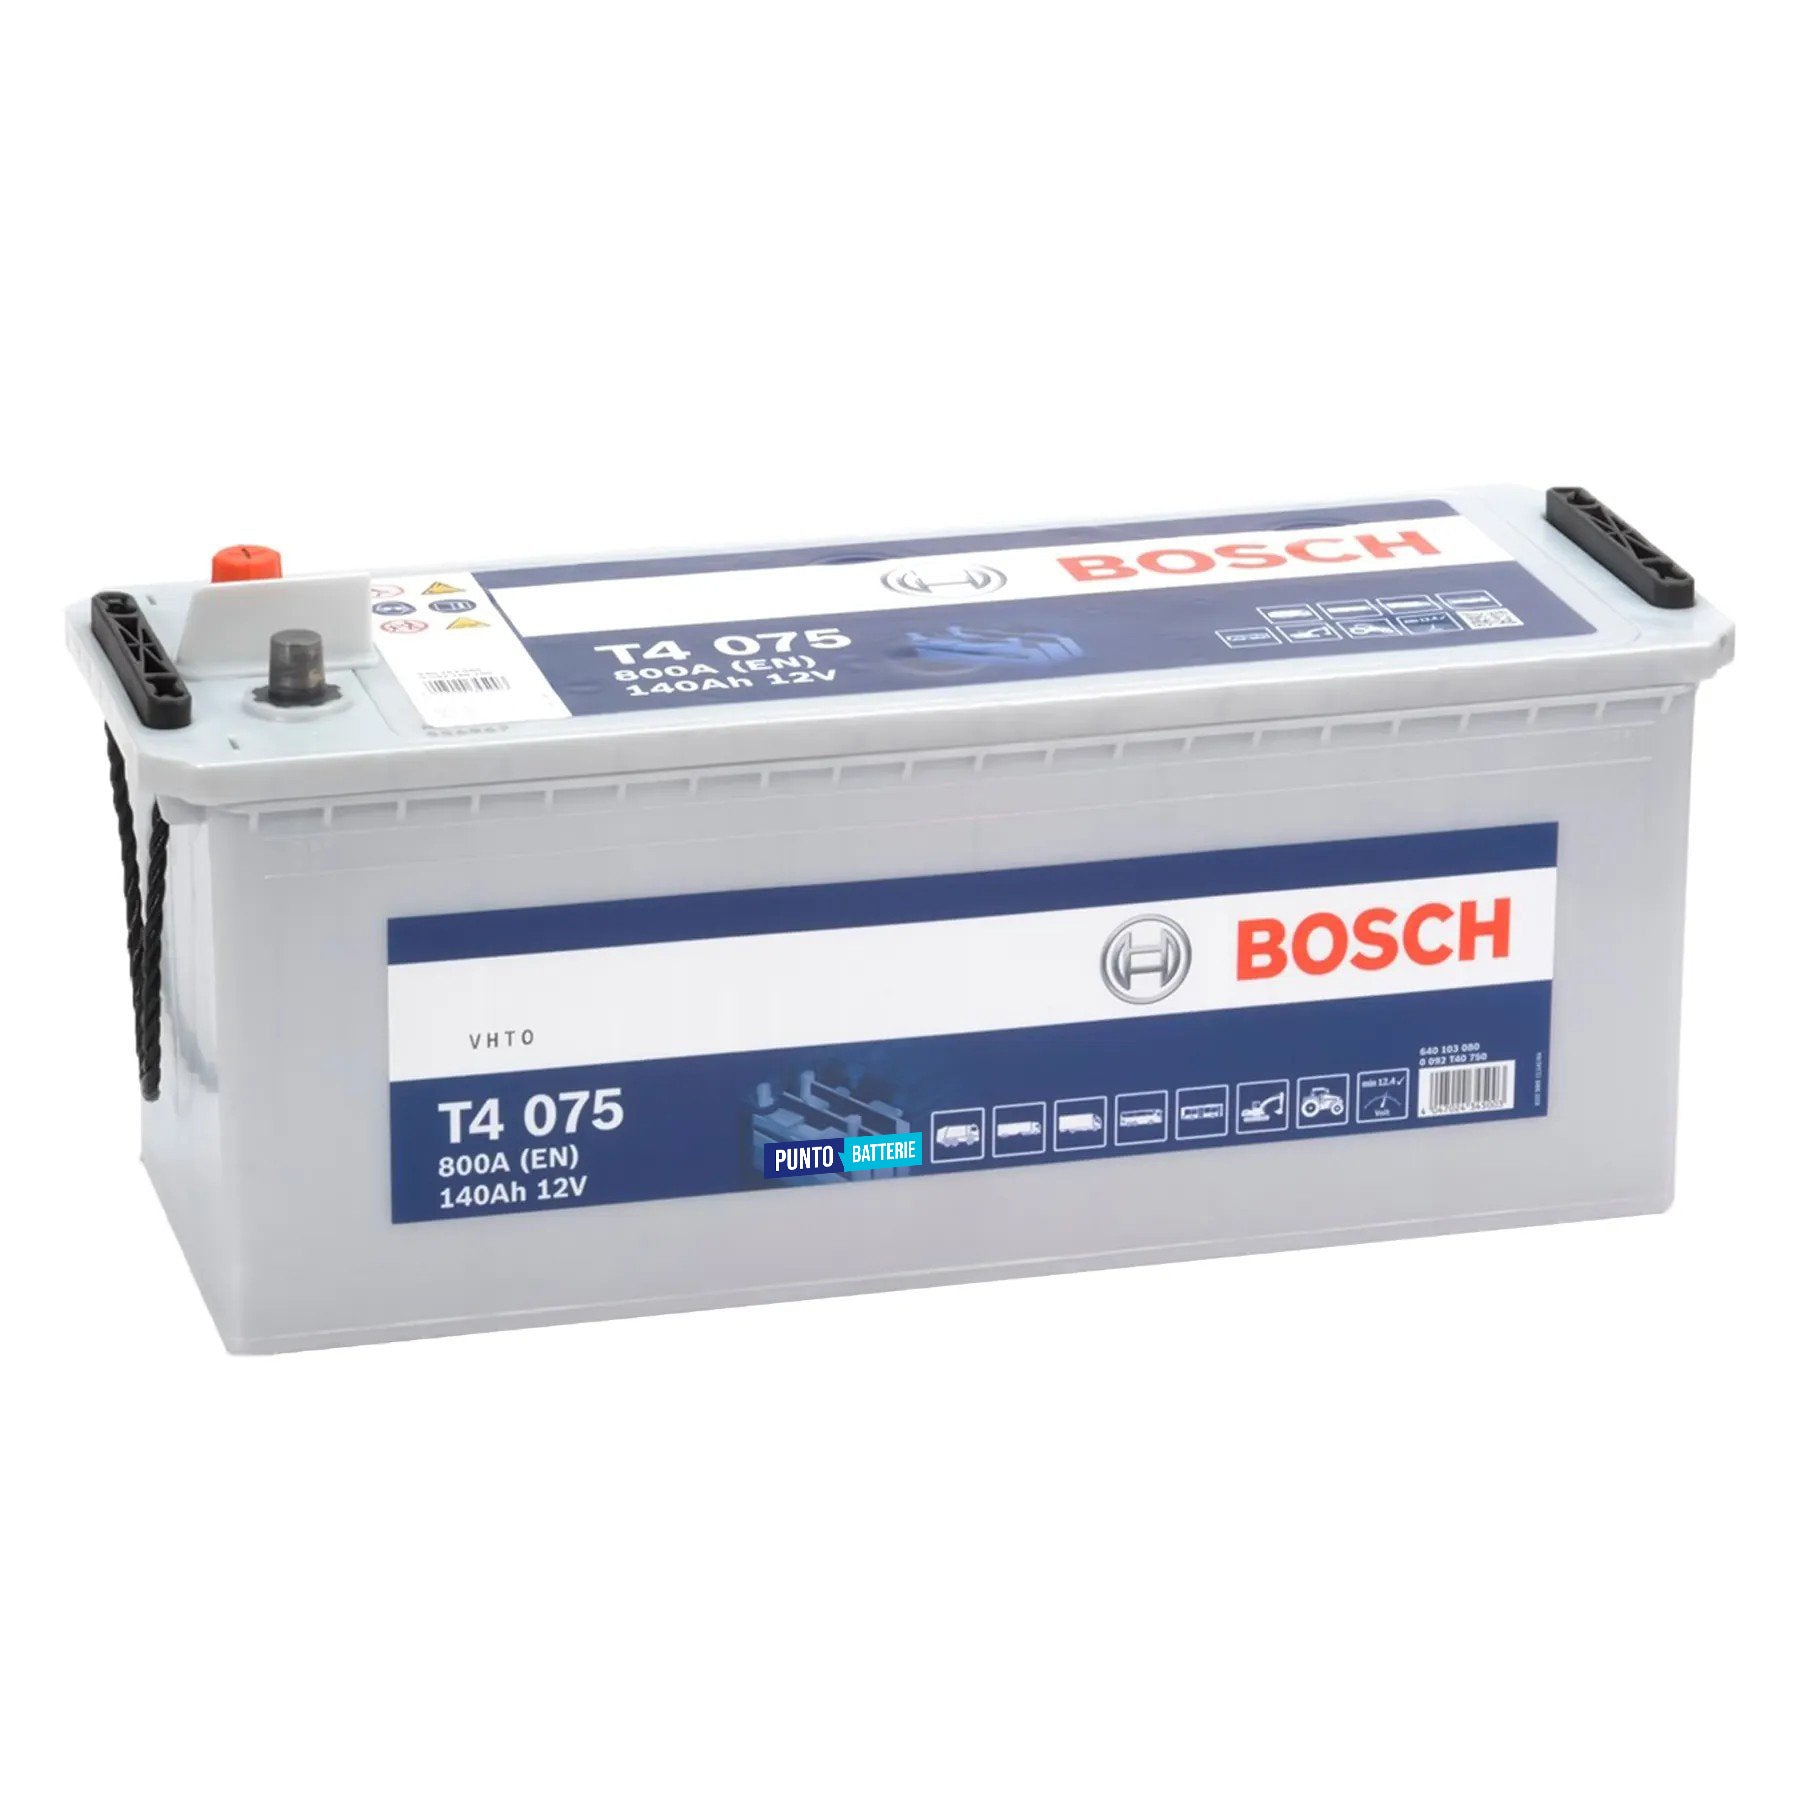 Batteria originale Bosch T4 T5075, dimensioni 513 x 189 x 223, polo positivo a sinistra, 12 volt, 140 amperora, 800 ampere. Batteria per camion e veicoli pesanti.